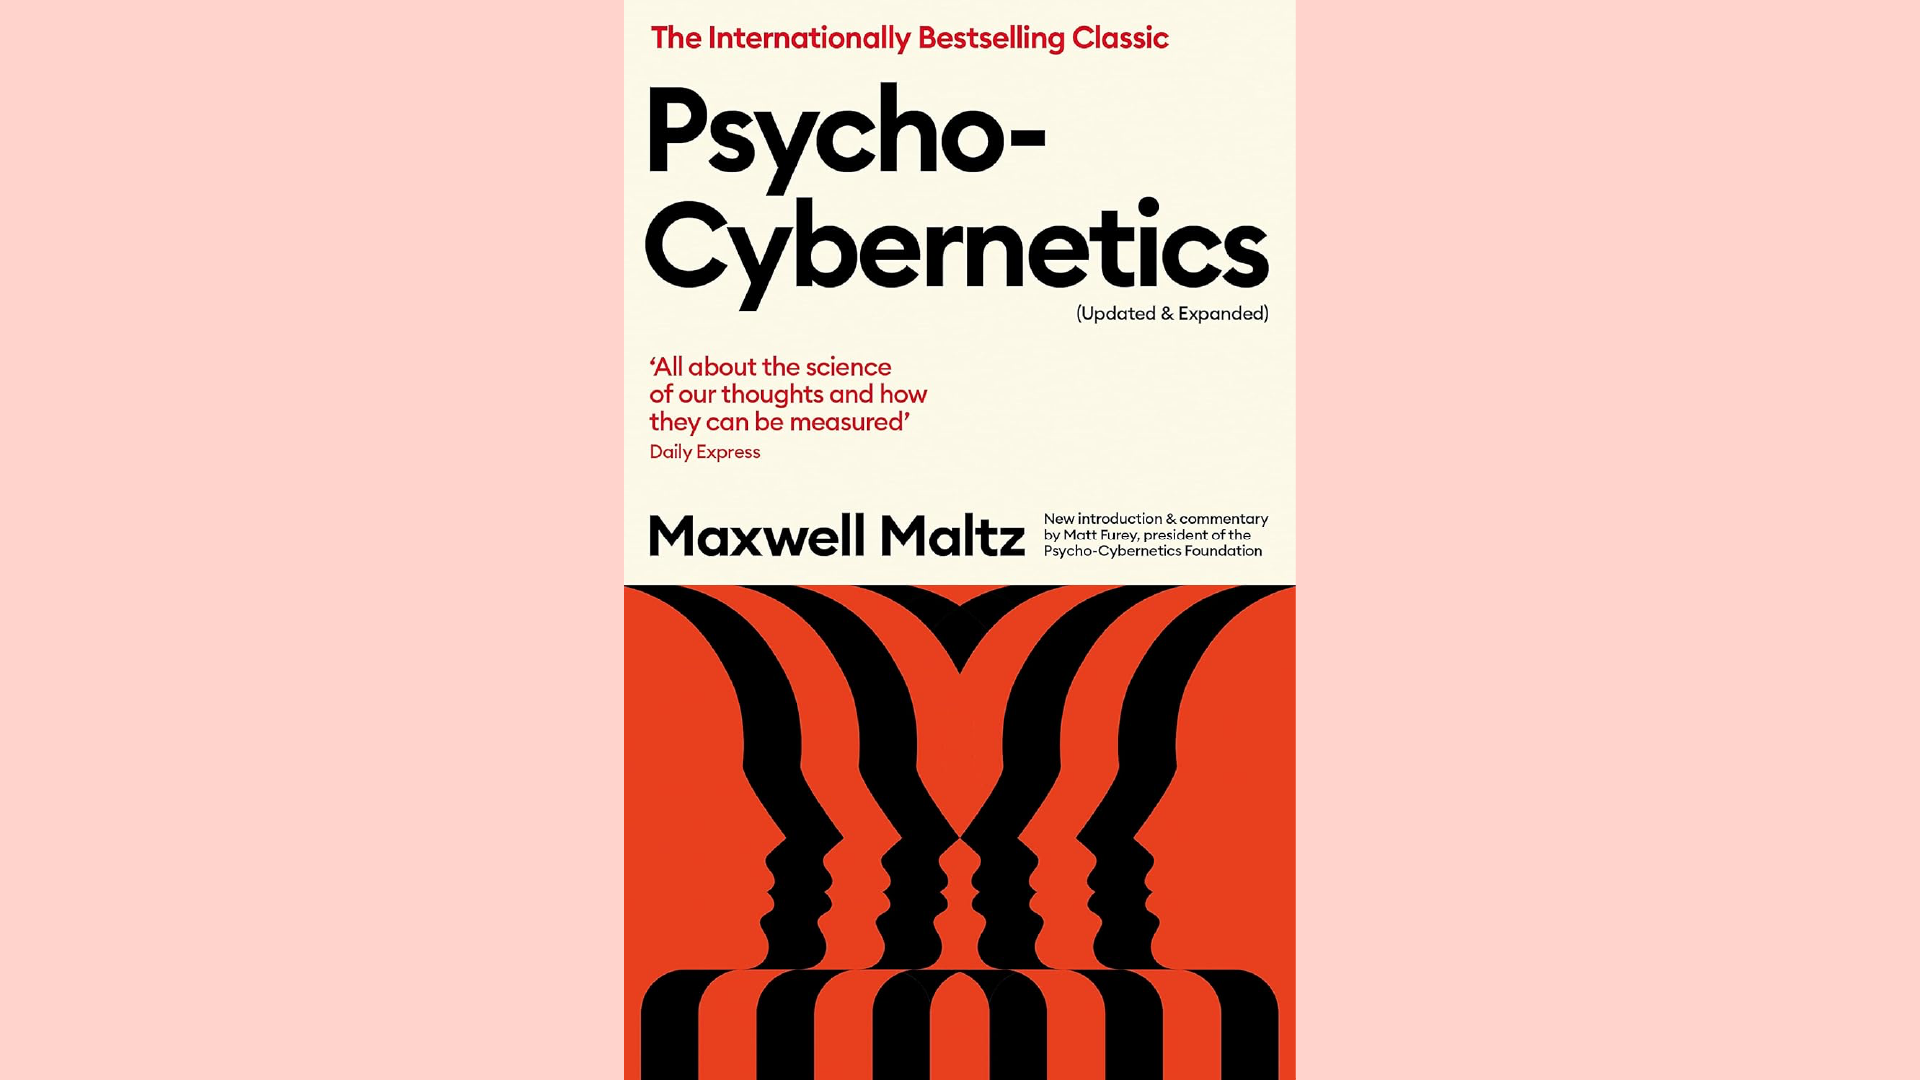 Summary: Psycho-Cybernetics by Maxwell Maltz